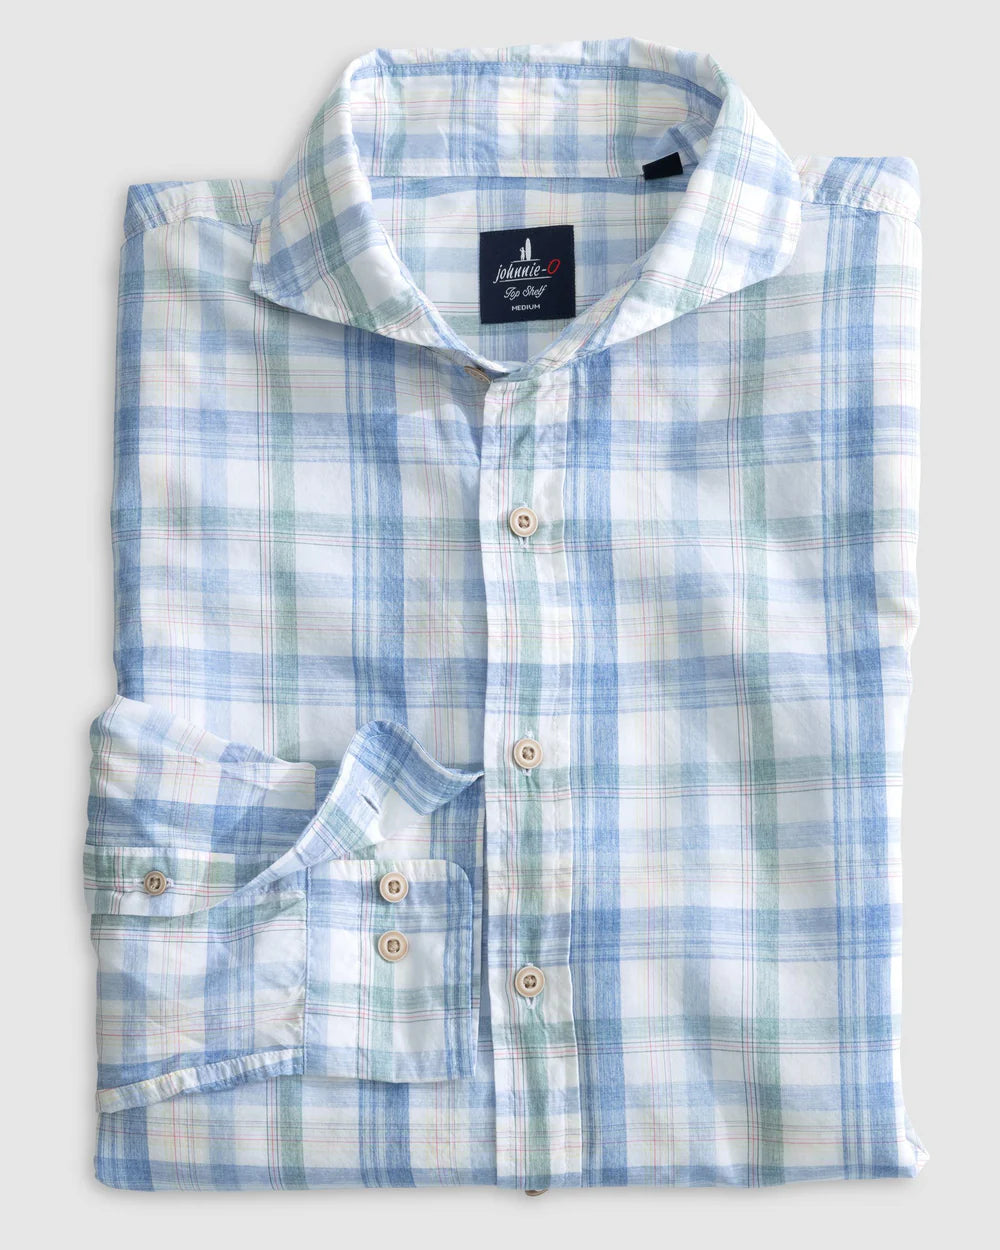 Johnnie-O Liden Top Shelf Button Up Shirt In Laguna Blue